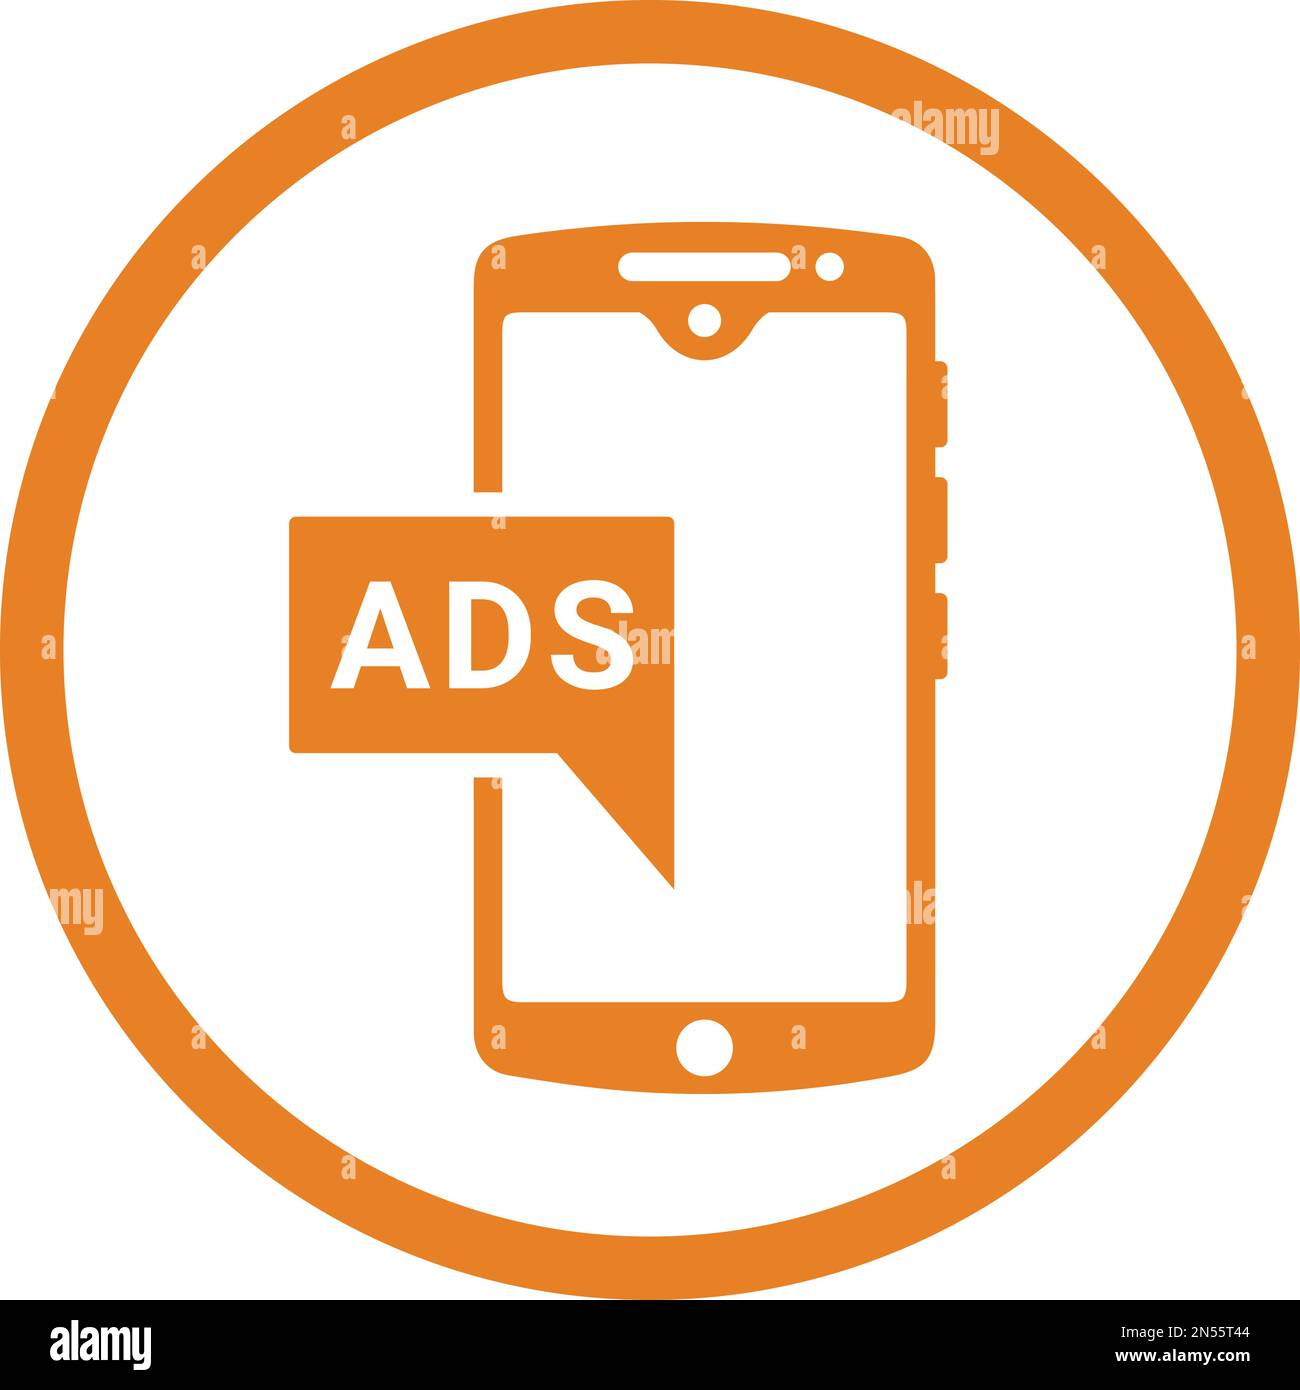 Mobile, icona pubblicitaria - file EPS vettoriale. Ideale per supporti di stampa, Web, immagini di magazzino, uso commerciale o qualsiasi tipo di progetto di progettazione. Illustrazione Vettoriale